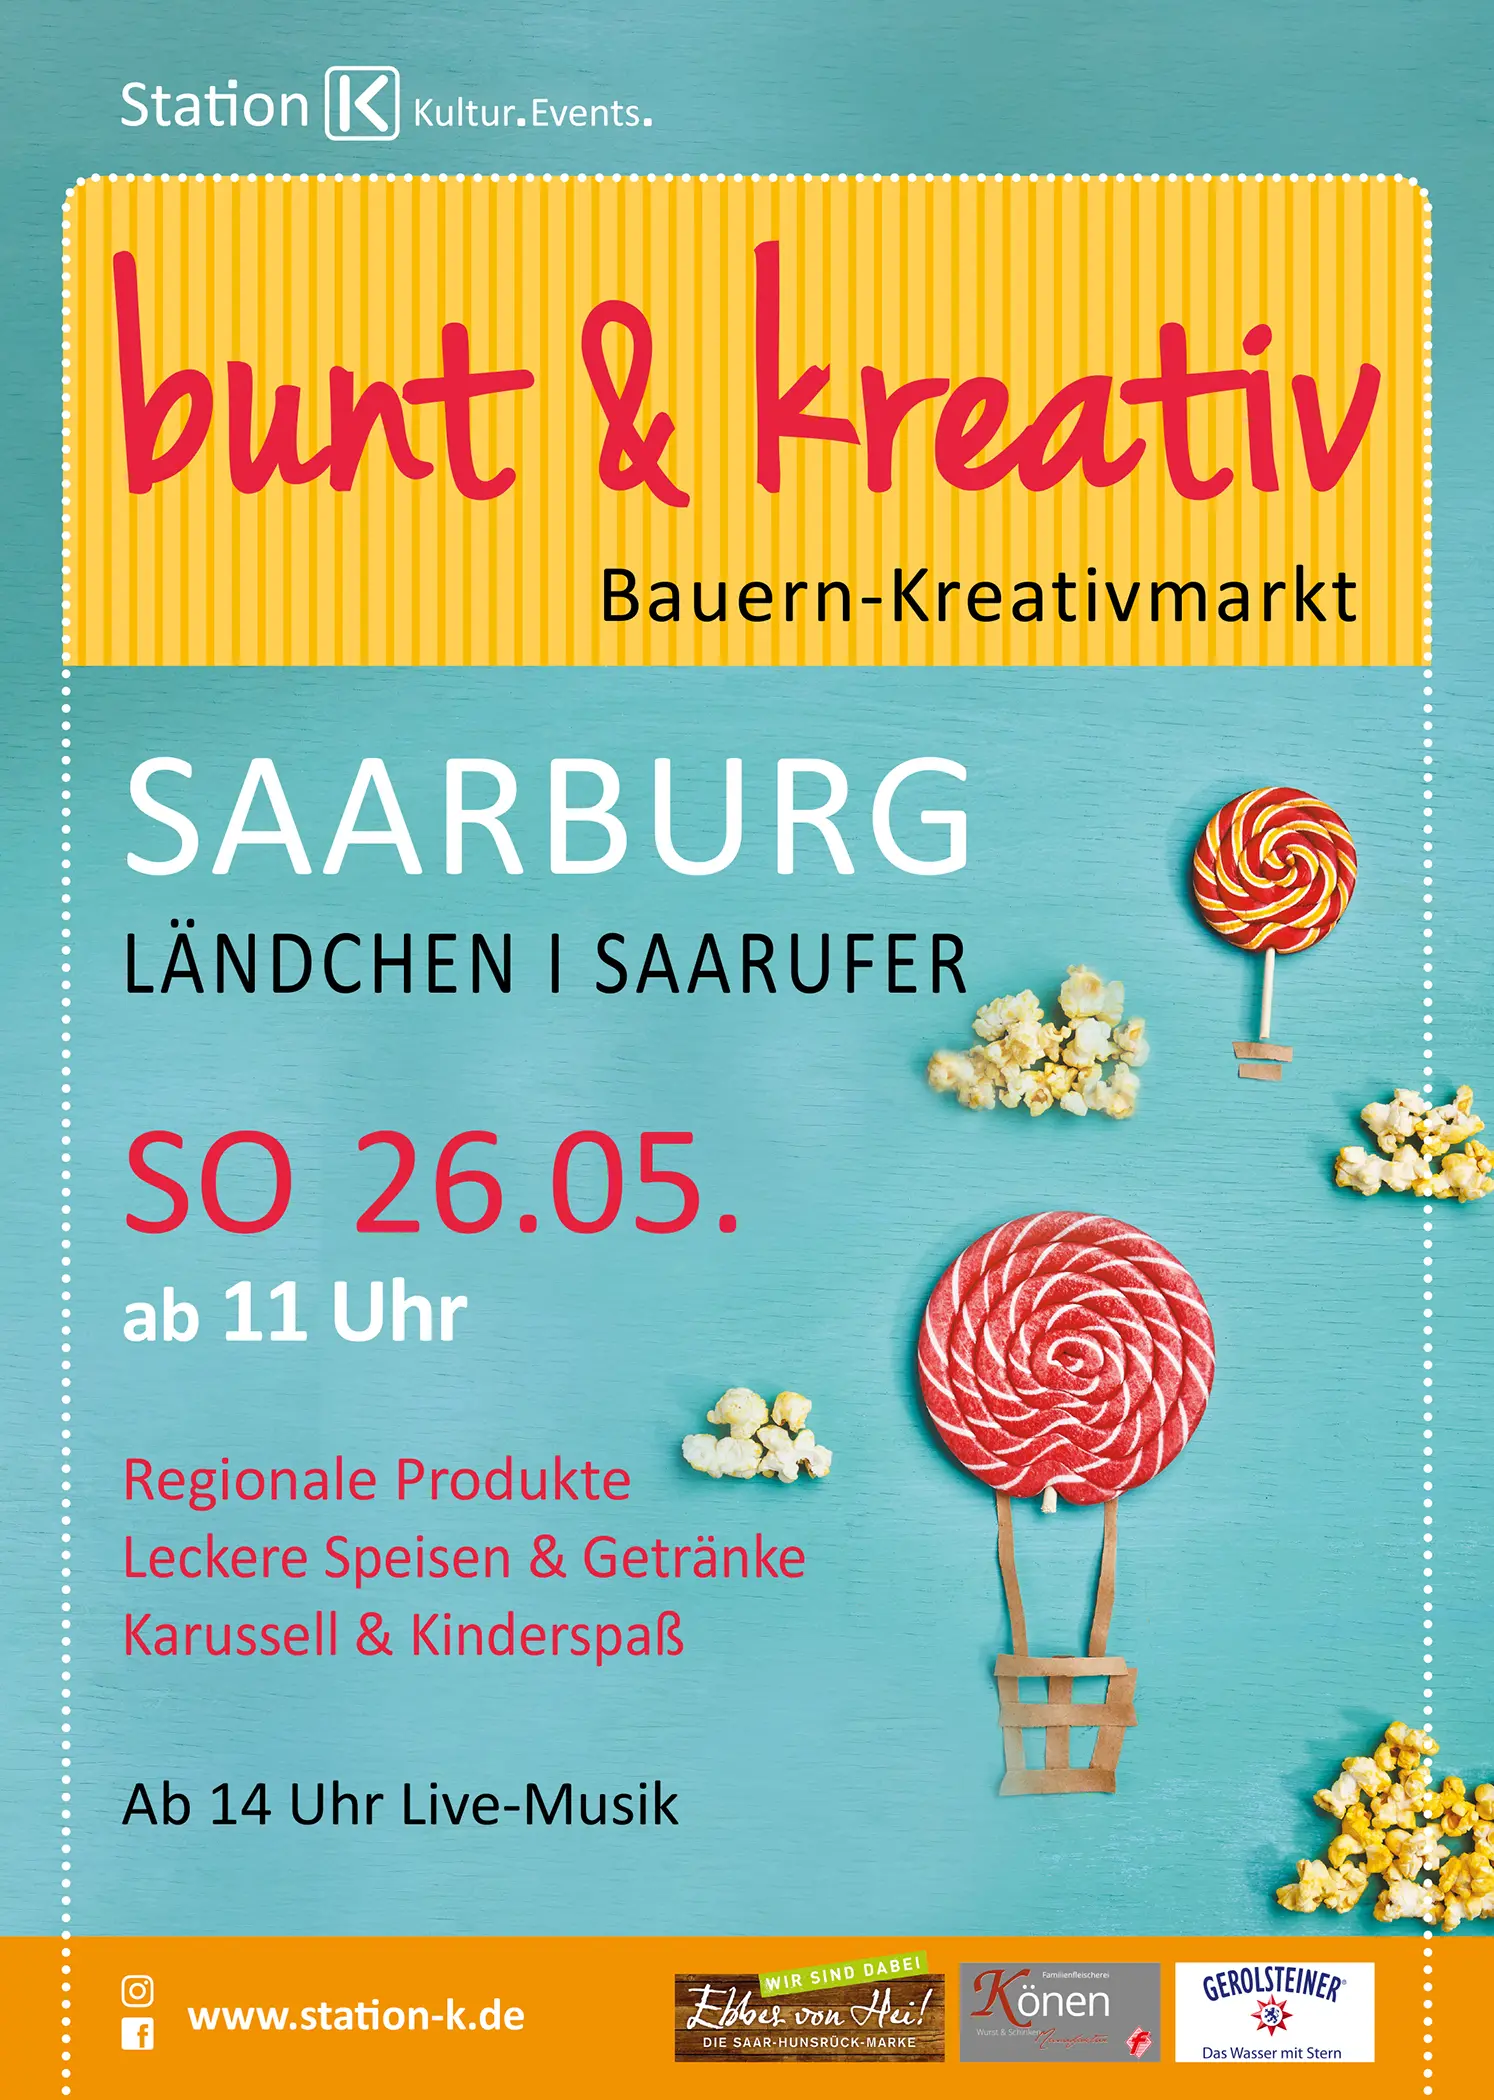 Bunt & Kreativ in Saarburg